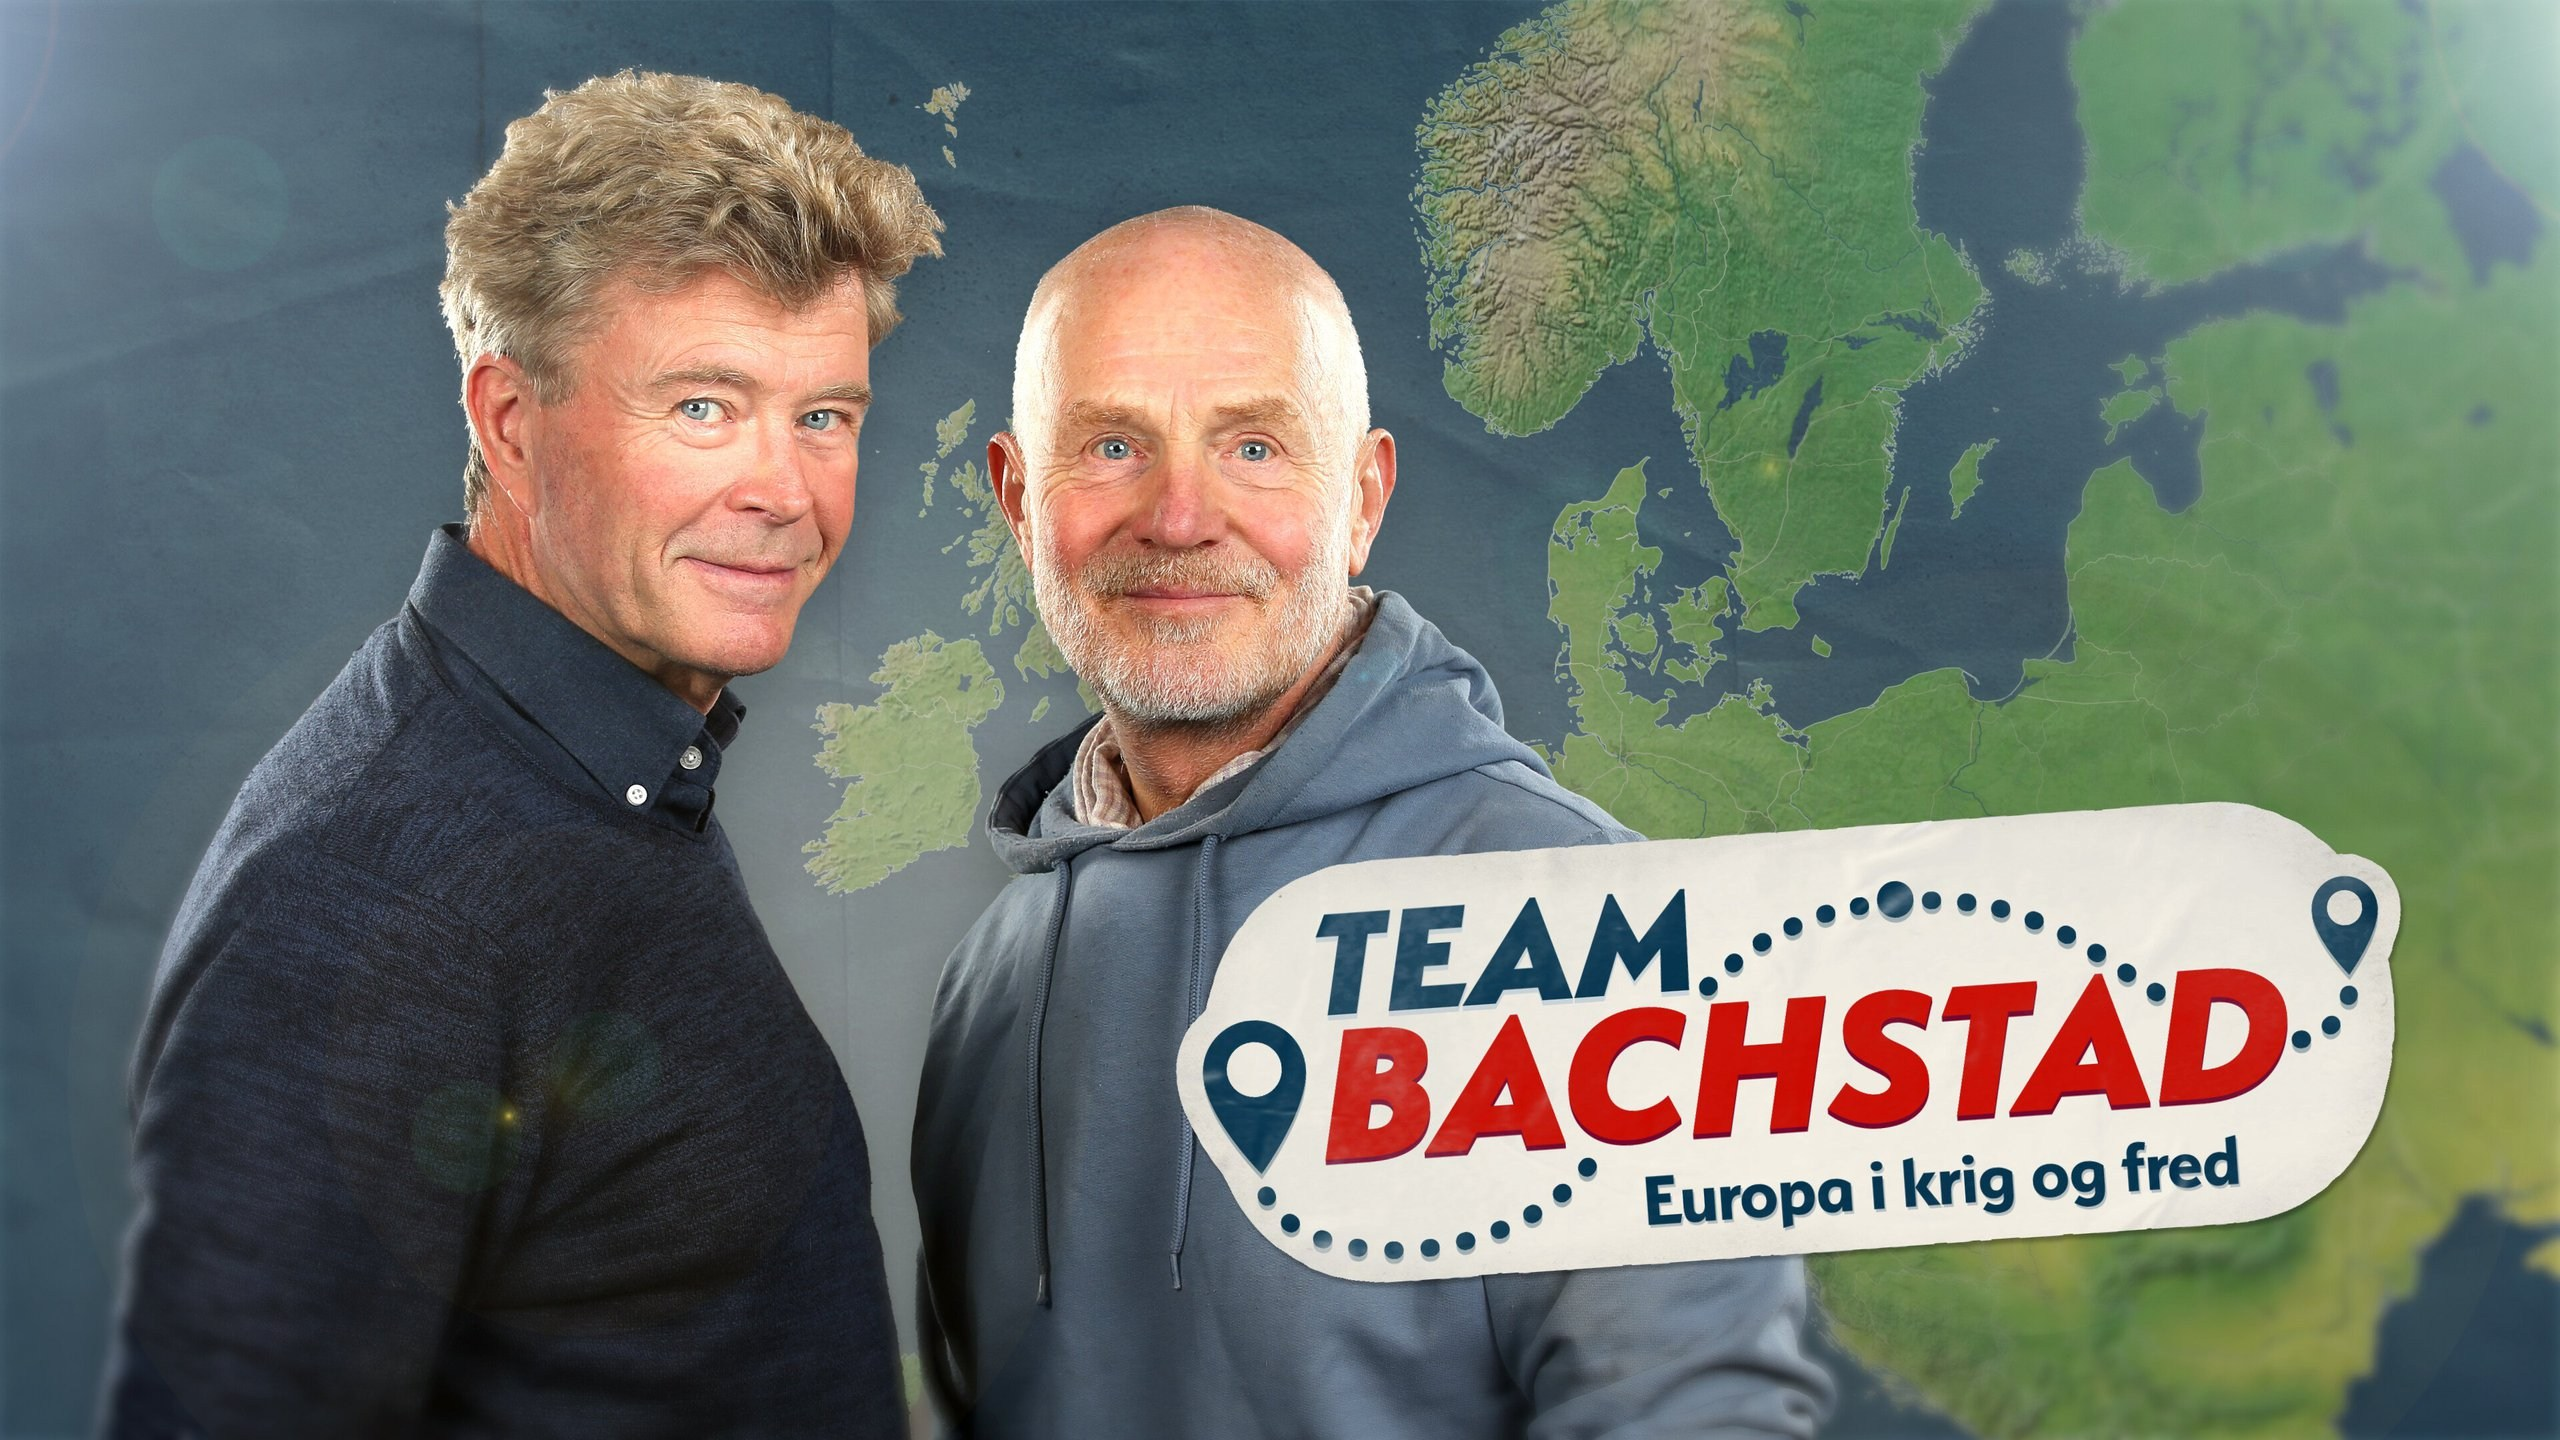 Team Bachstad - Europa i krig og fred